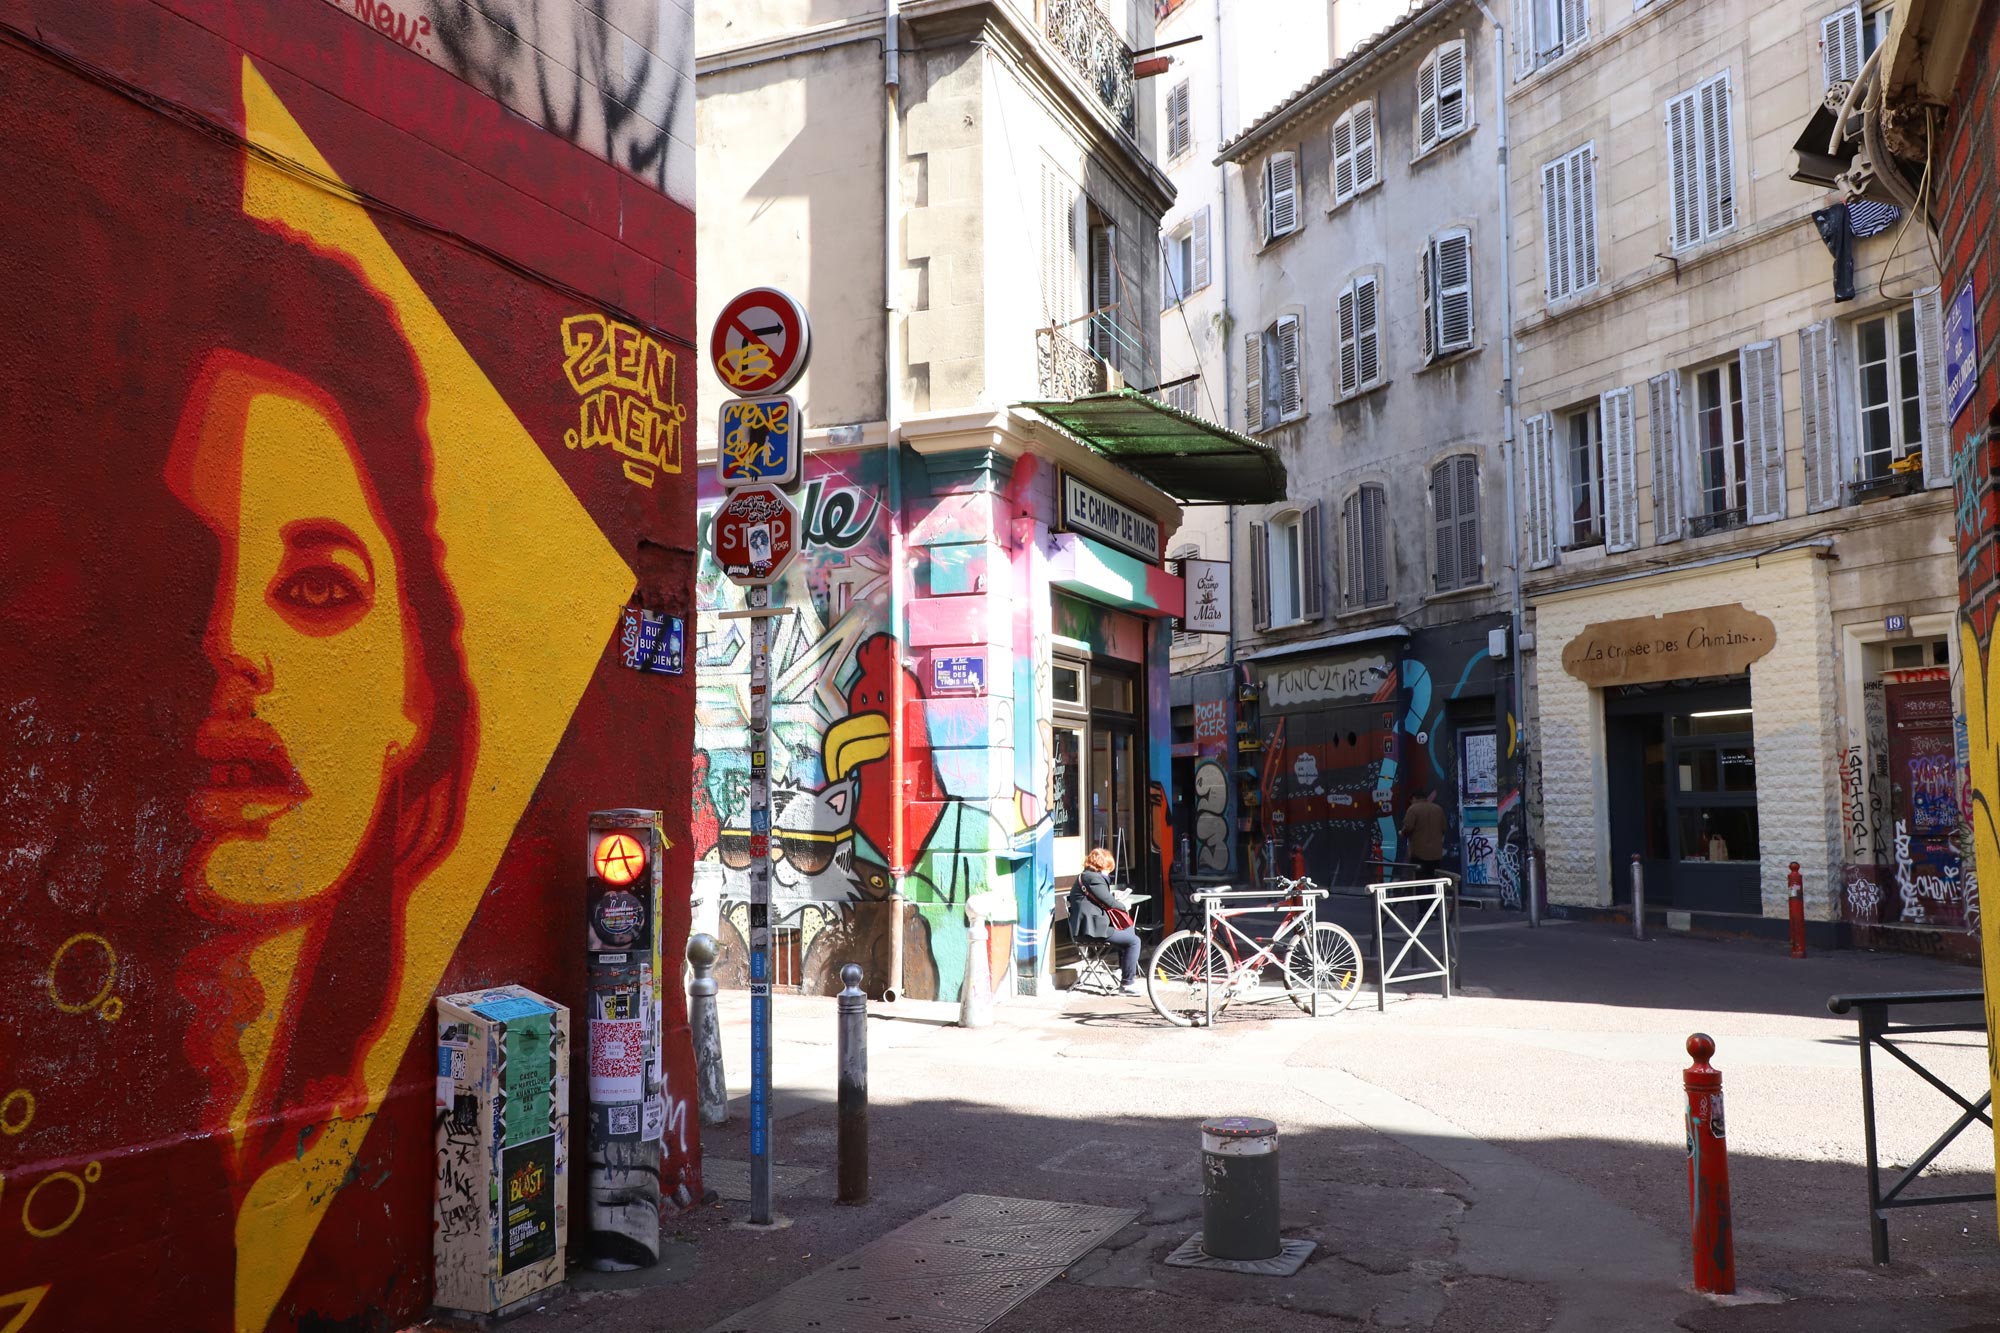 Cours Julien, Marseille, Pháp: Từng là nơi có các khu chợ ngoài trời của thành phố, ngày nay 'mui xe là nơi ẩn náu của các hiệu sách cũ, địa điểm nhạc sống và nghệ thuật đường phố.